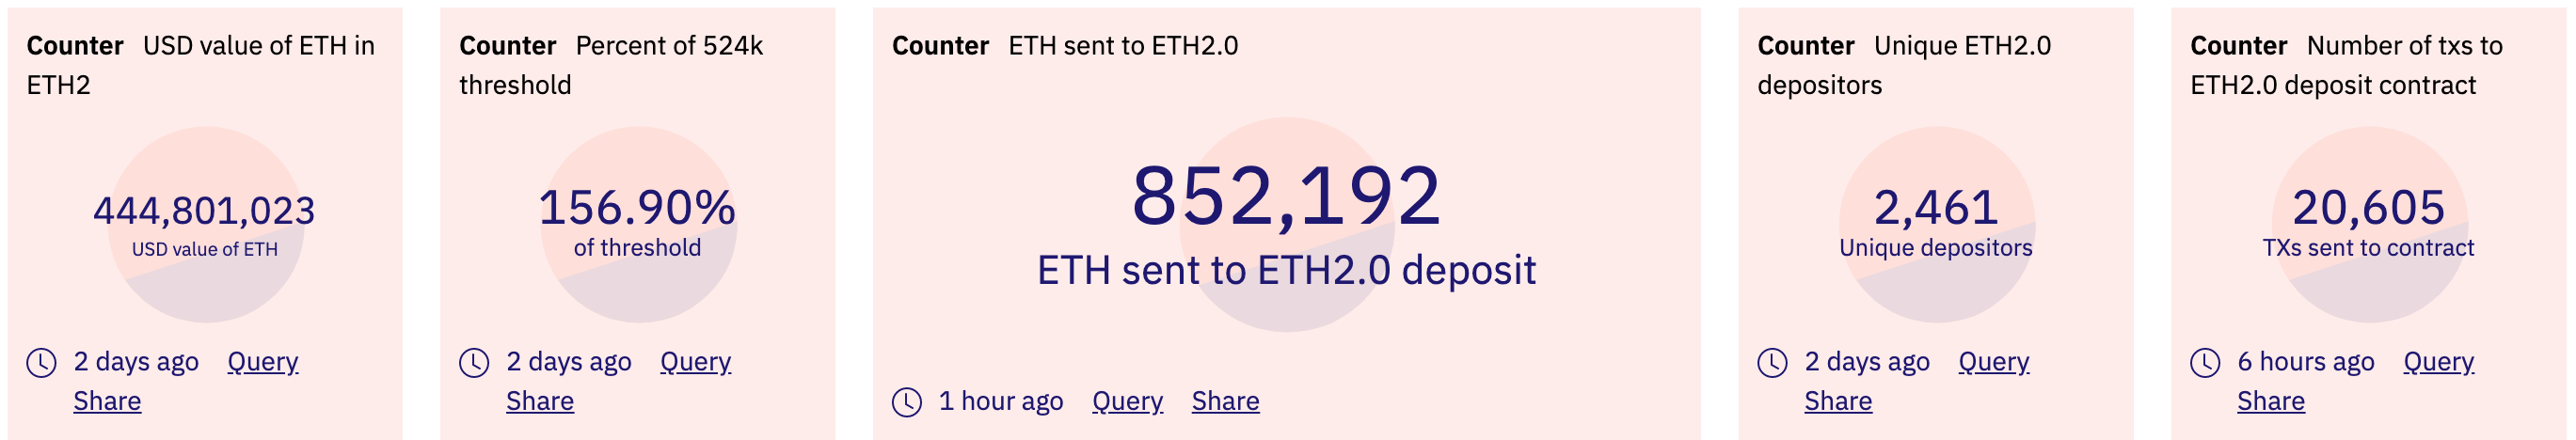 ETH 2.0 deposits data